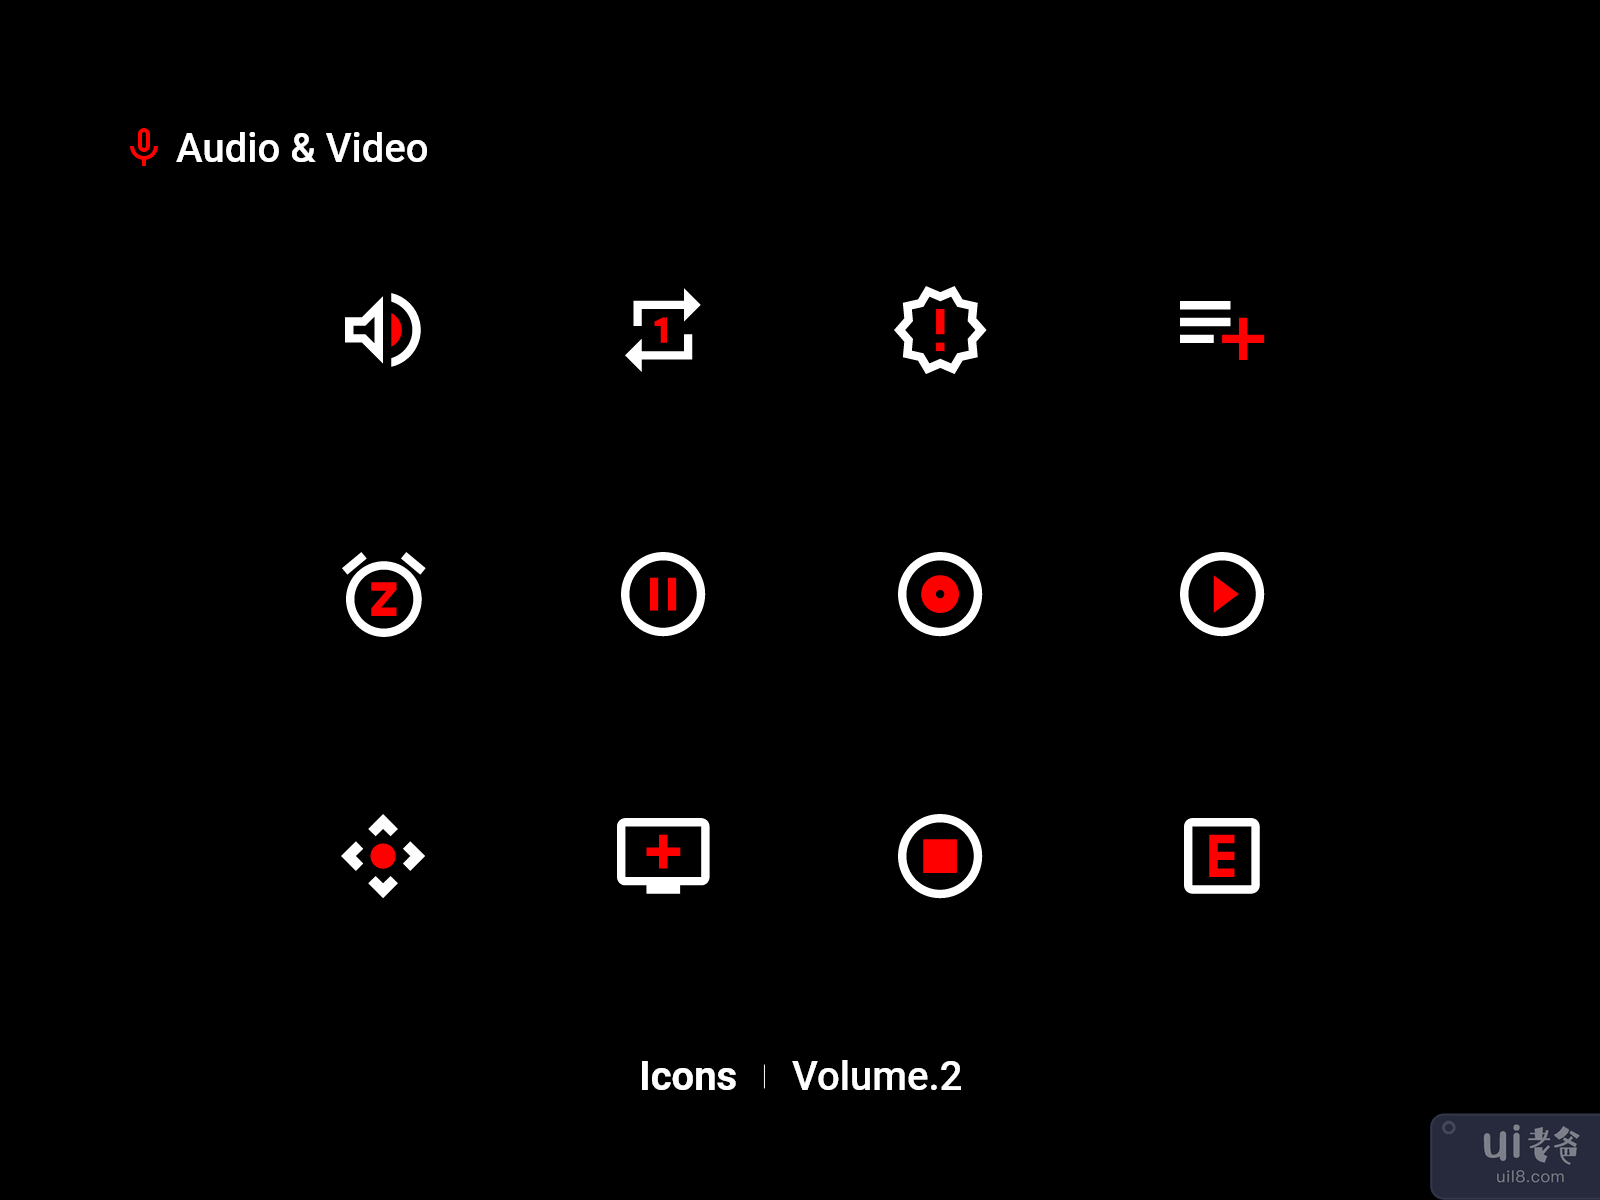 音频和视频图标 Vol.2(Audio & Video Icons Vol.2)插图